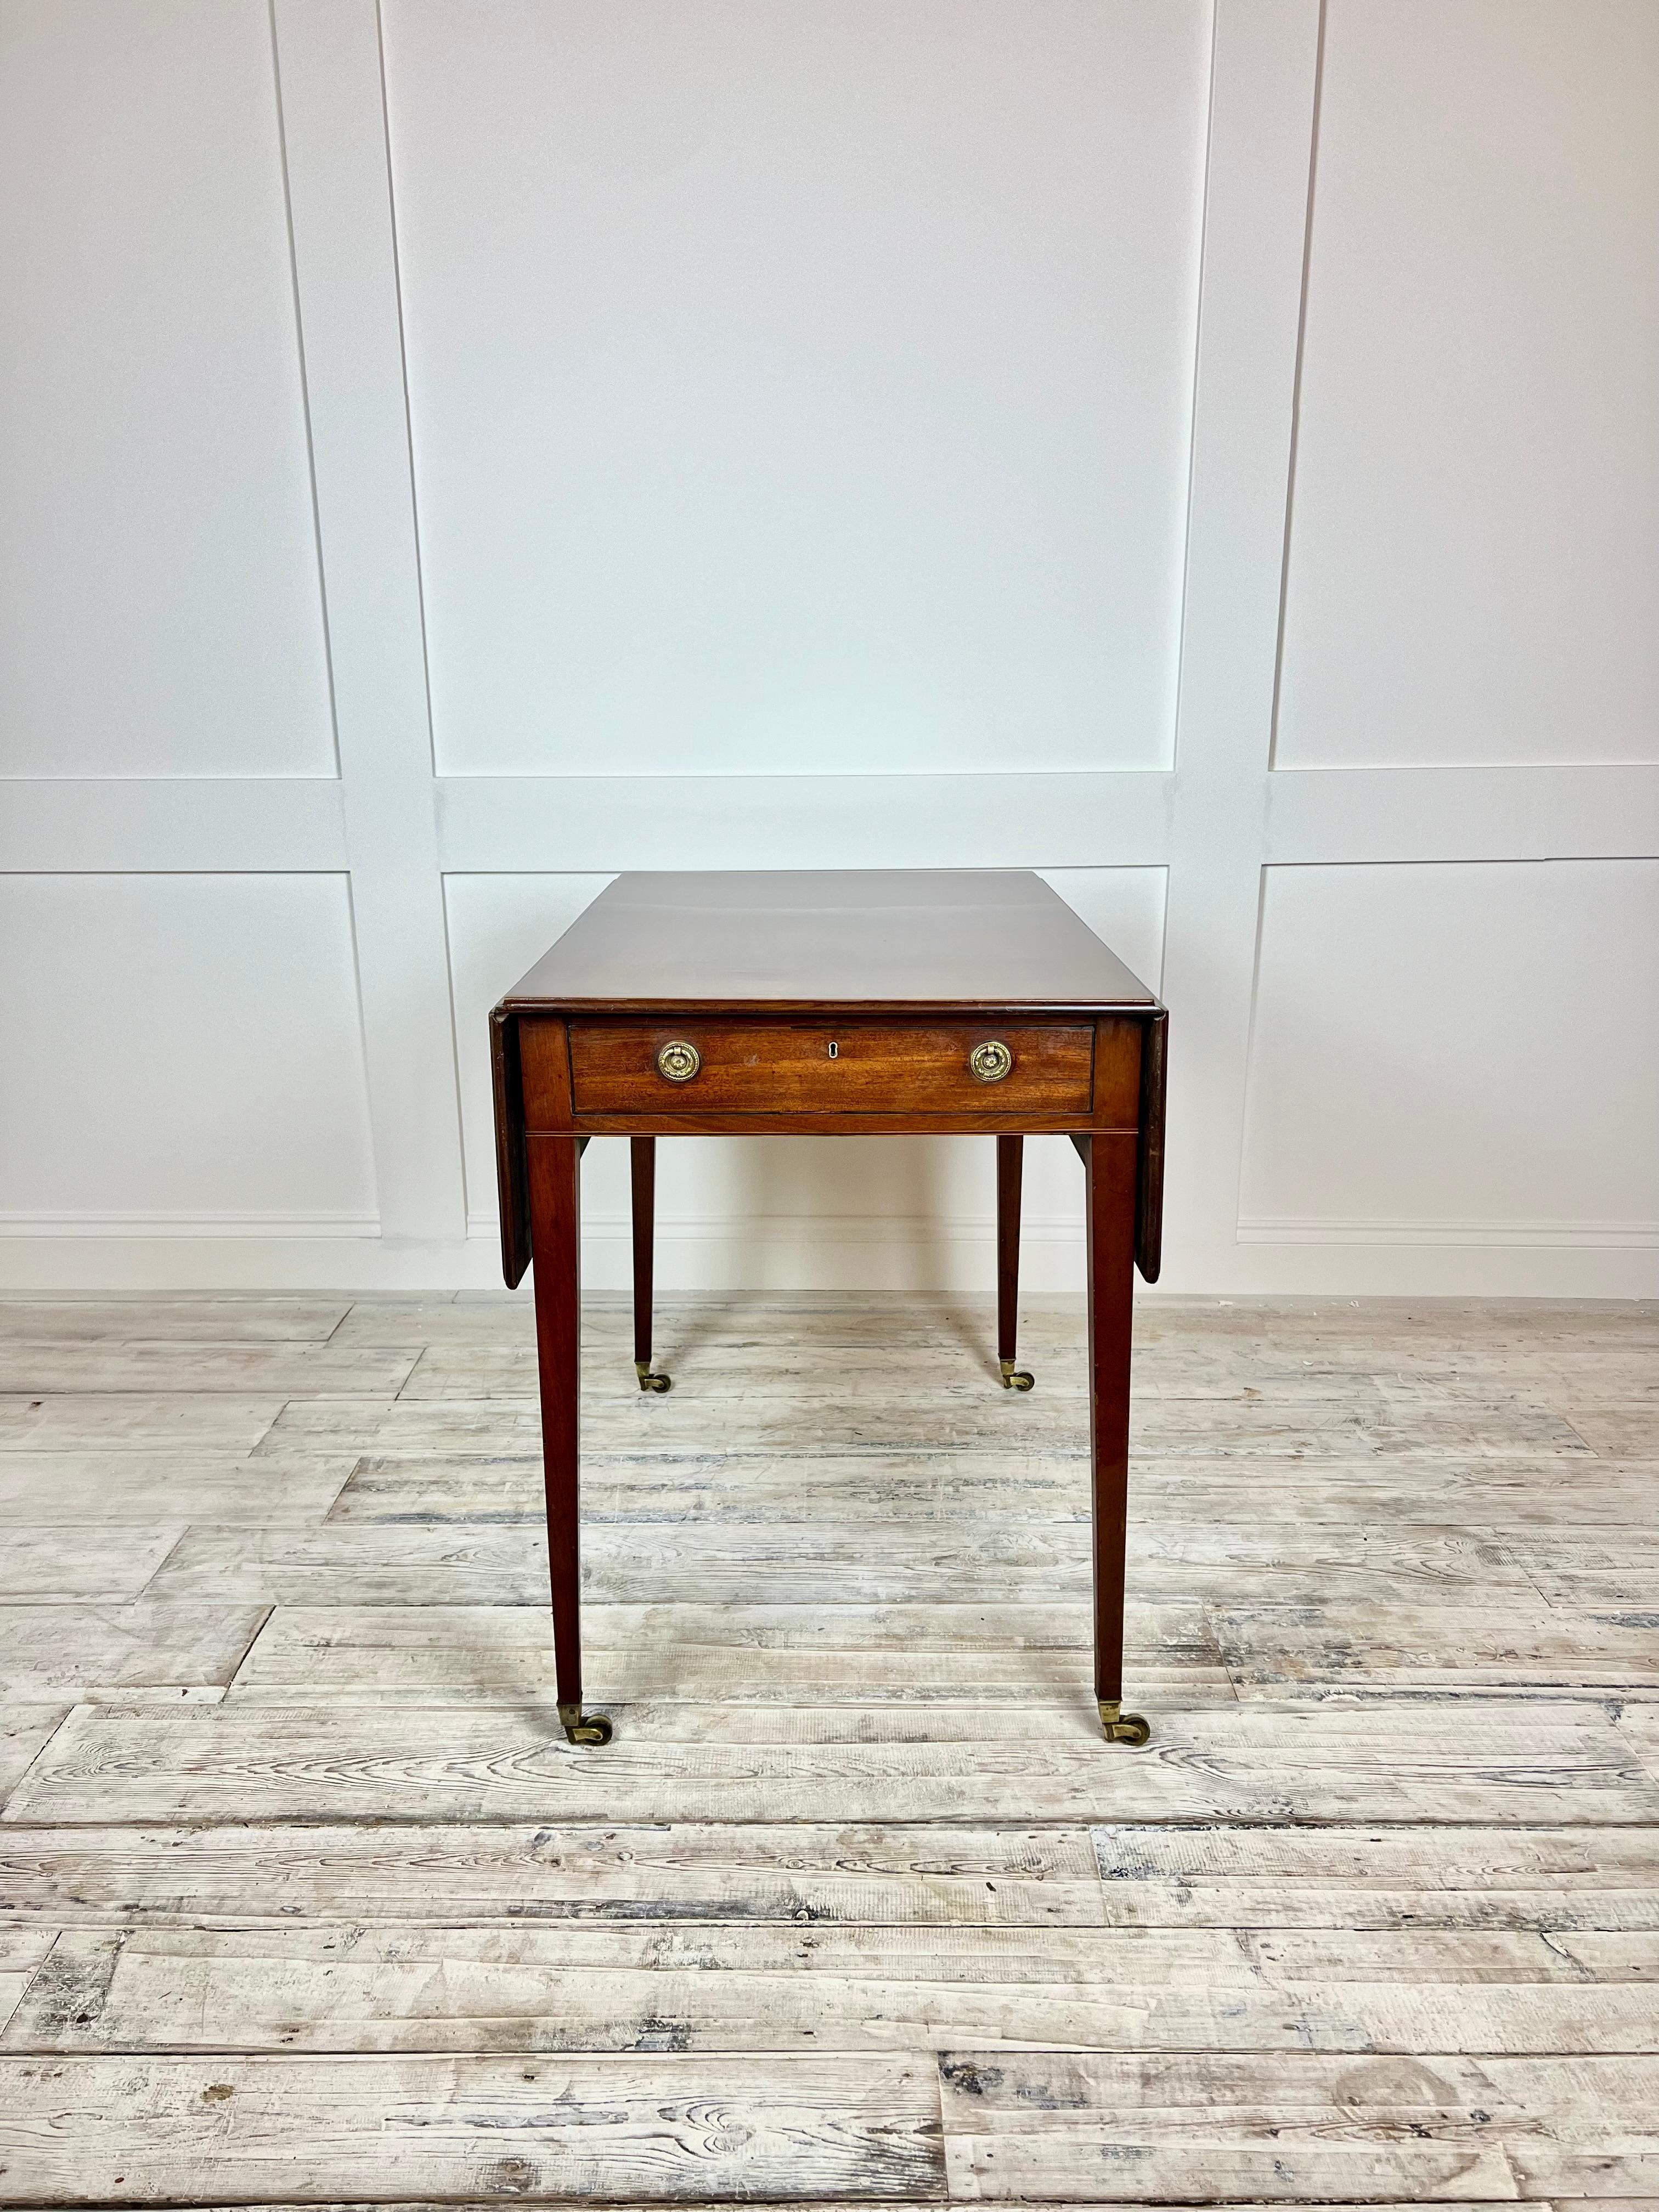 Ein reizvolles Beispiel für einen Regency-Tisch aus Mahagoni, der auf die frühen 1800er Jahre zurückgeht. Dieser Tisch ist aus reichem Mahagoniholz gefertigt und poliert, mit eleganten, spitz zulaufenden Beinen im späten Regency-Stil und